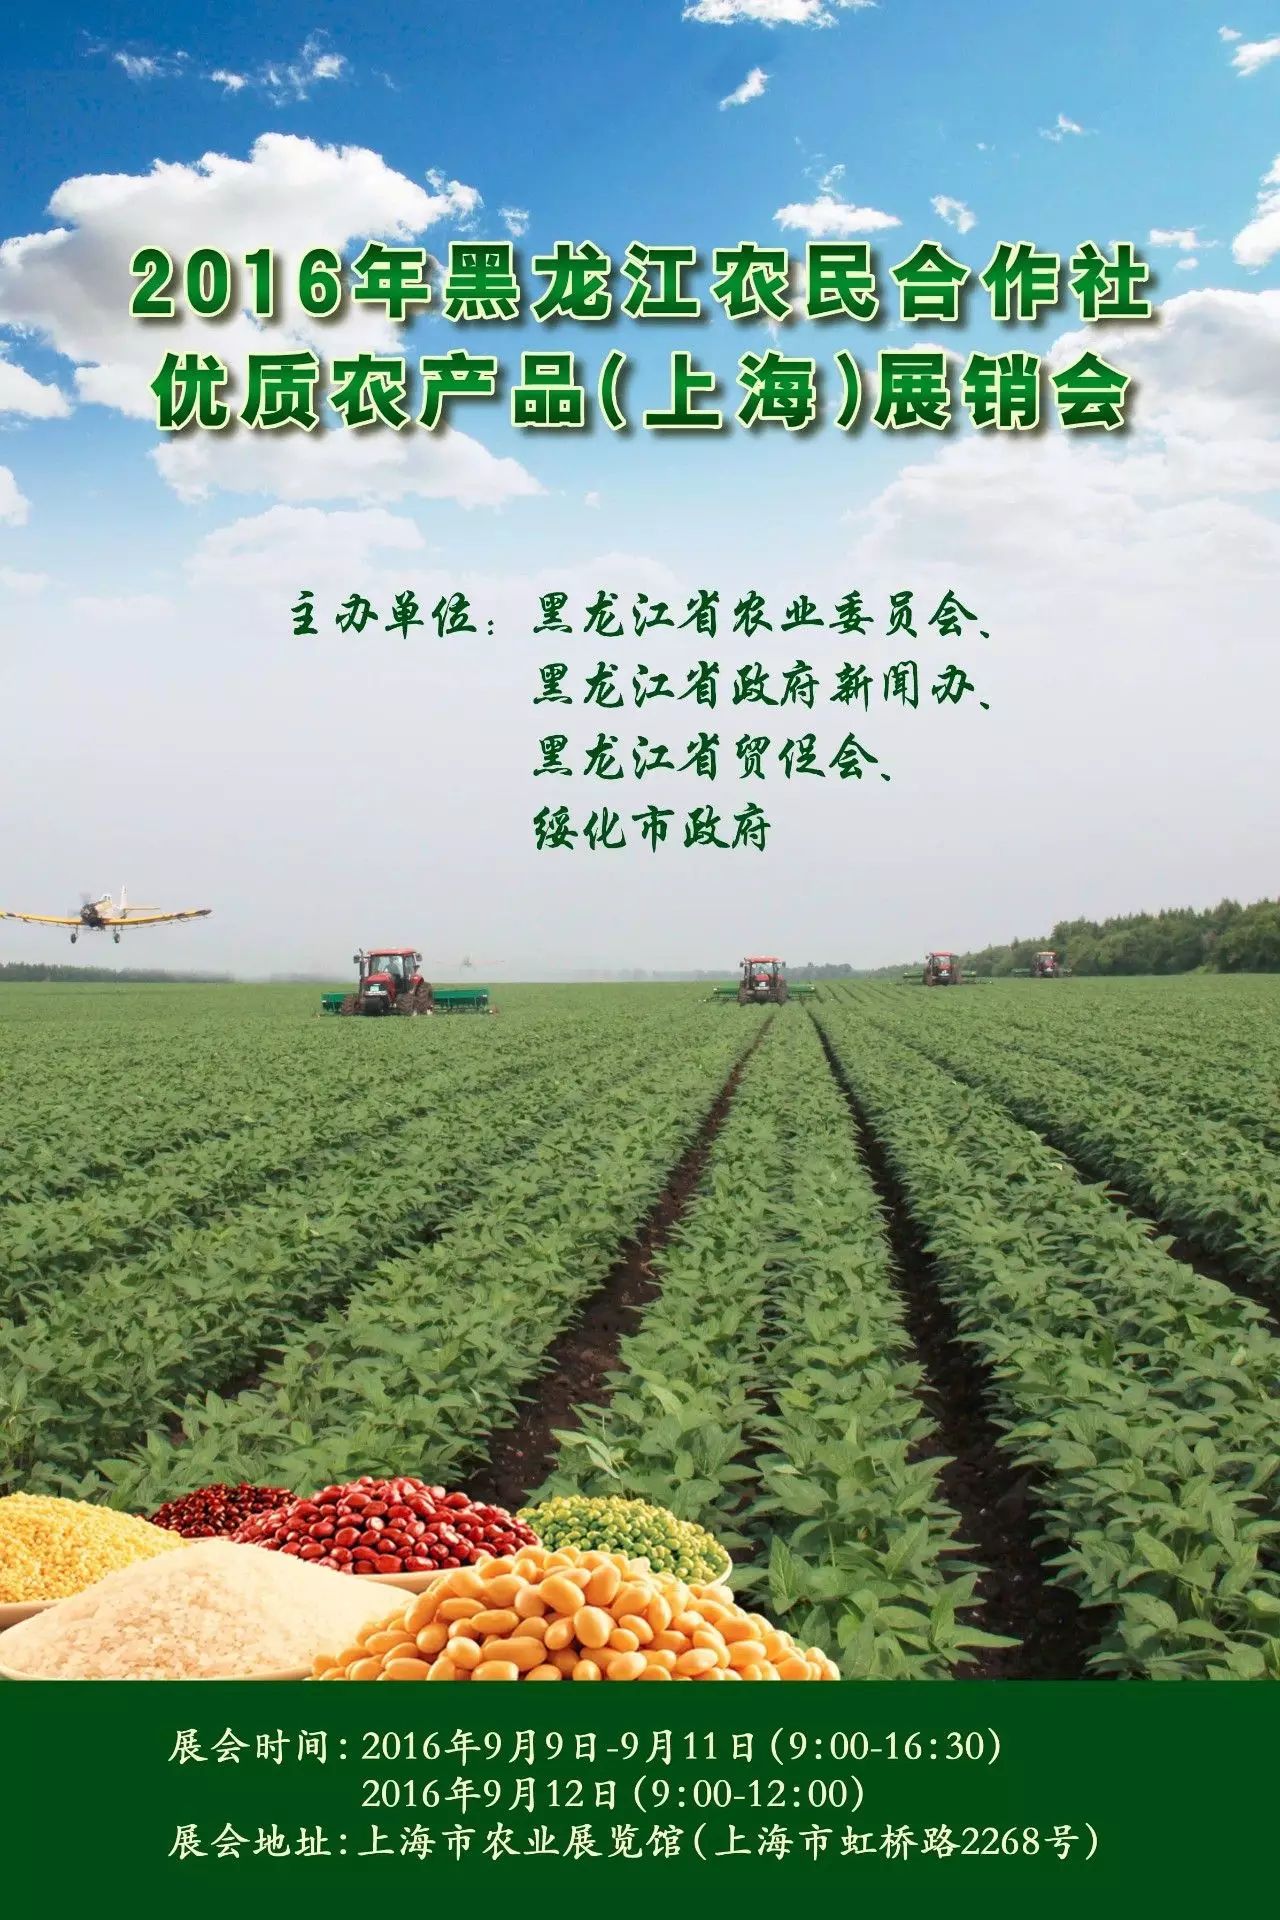 产品360展示_产品包装设计展示_黑龙江农产品展示